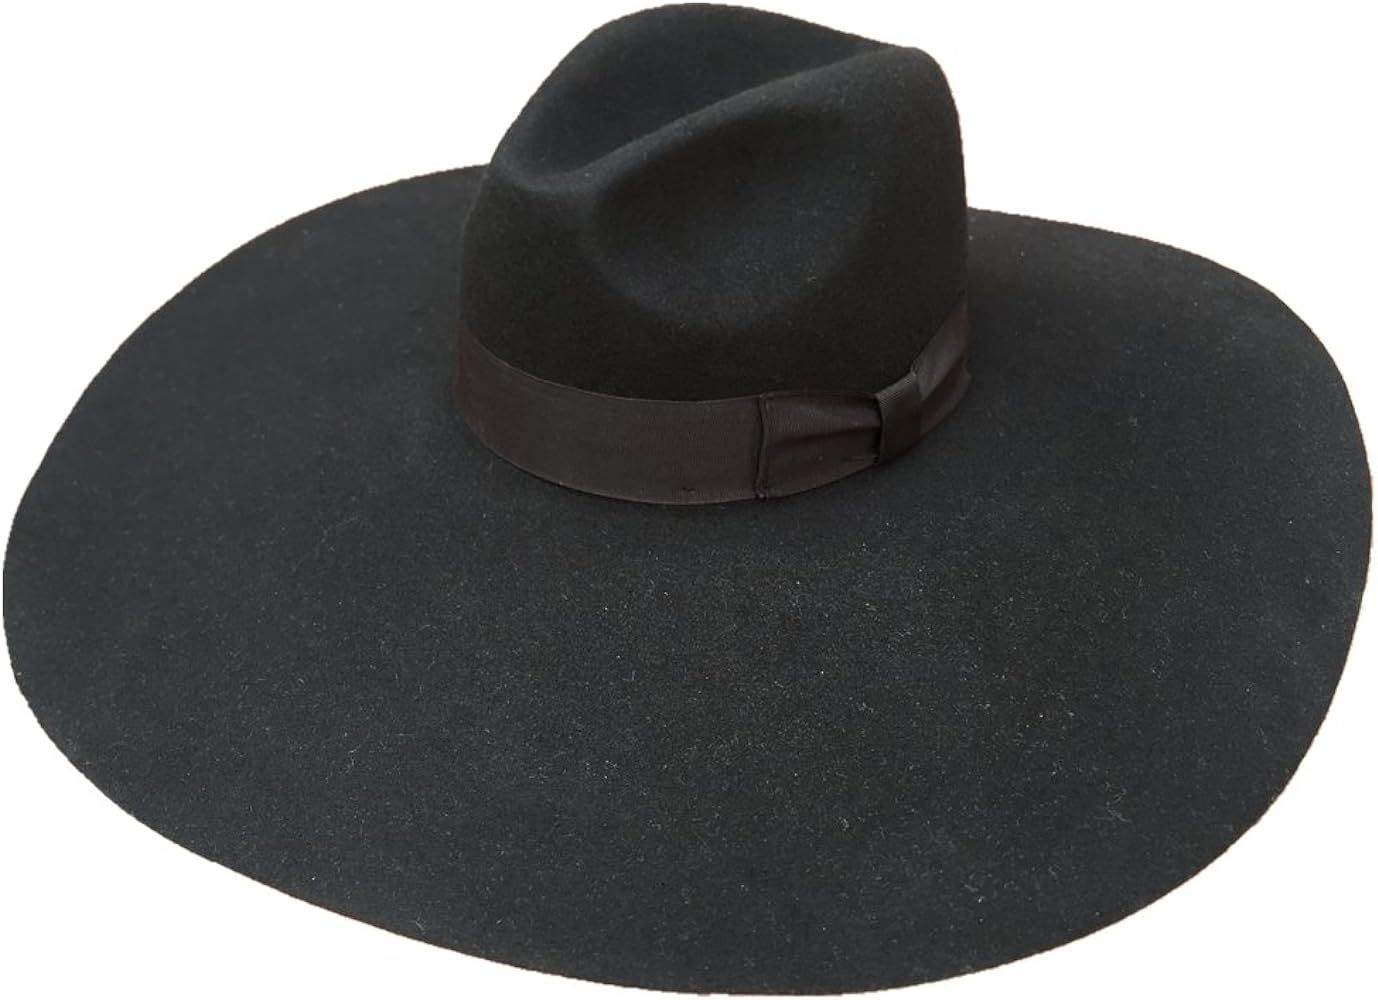 Black Wool Felt Soft Extra Wide Large Brim Floppy Fedora Hat for Women 6 1/4" | Amazon (US)